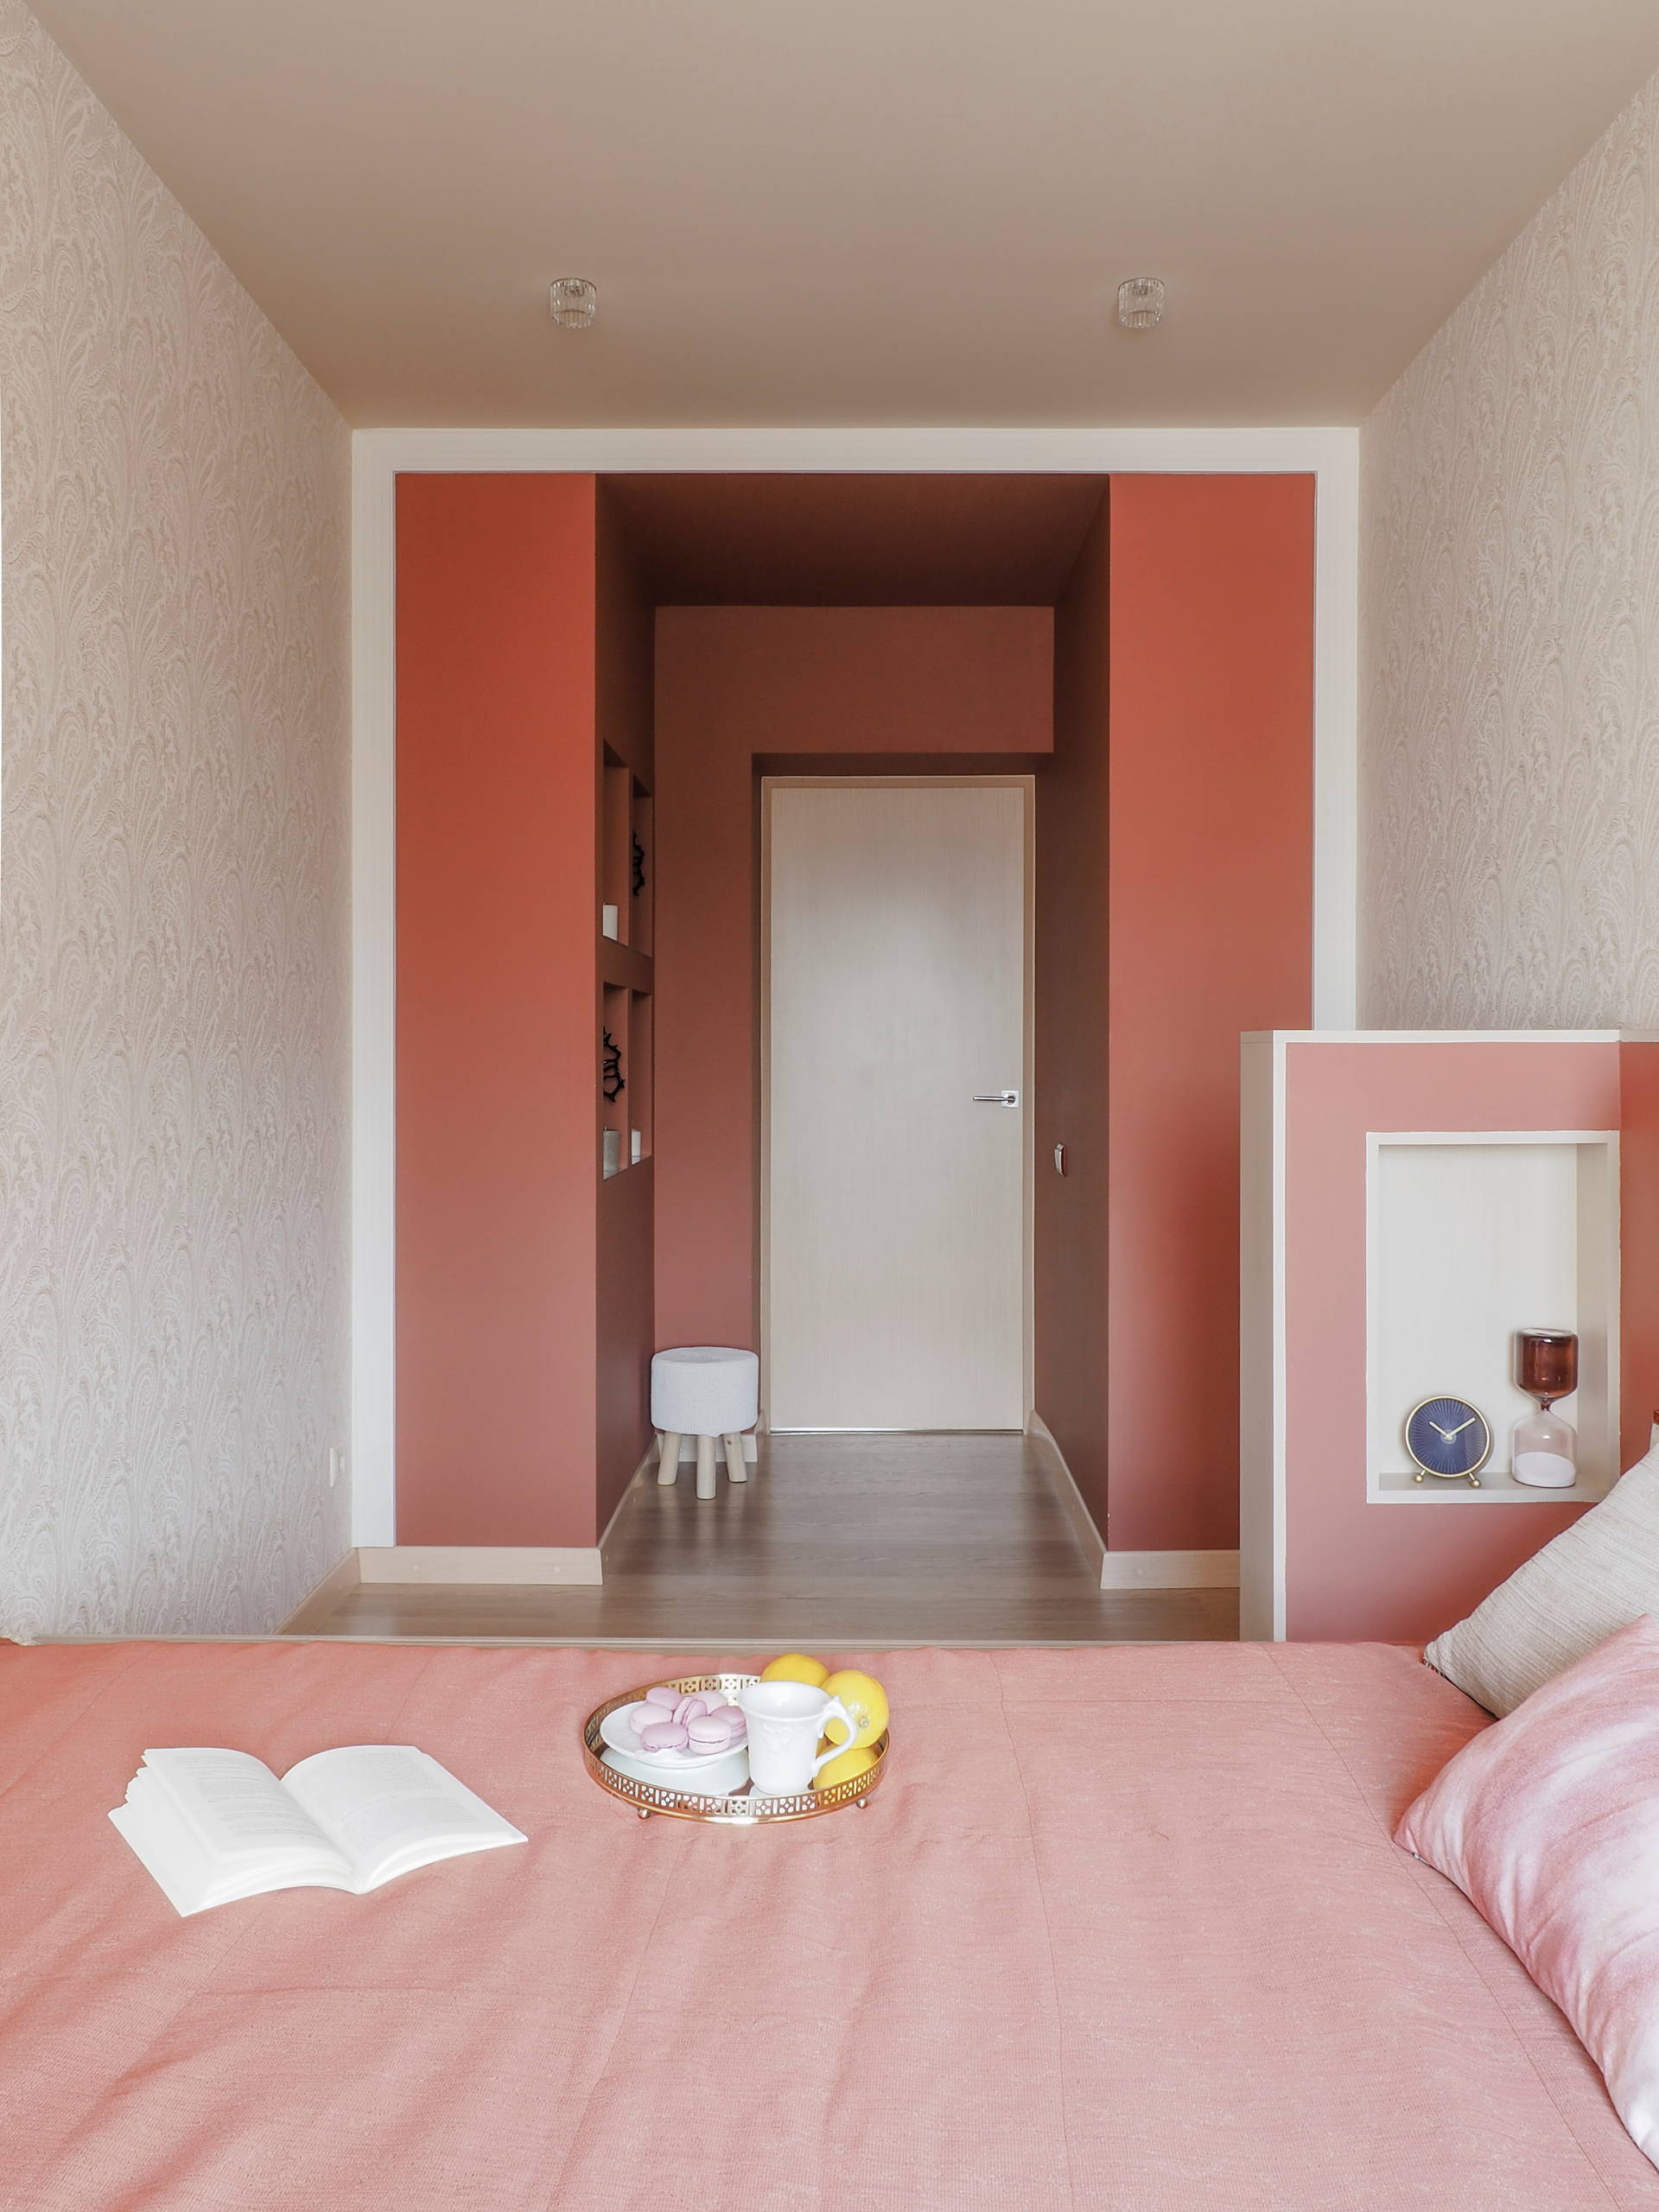 Узкая спальня: 110 фото идей как использовать пространство правильно и оформить интерьер стильно